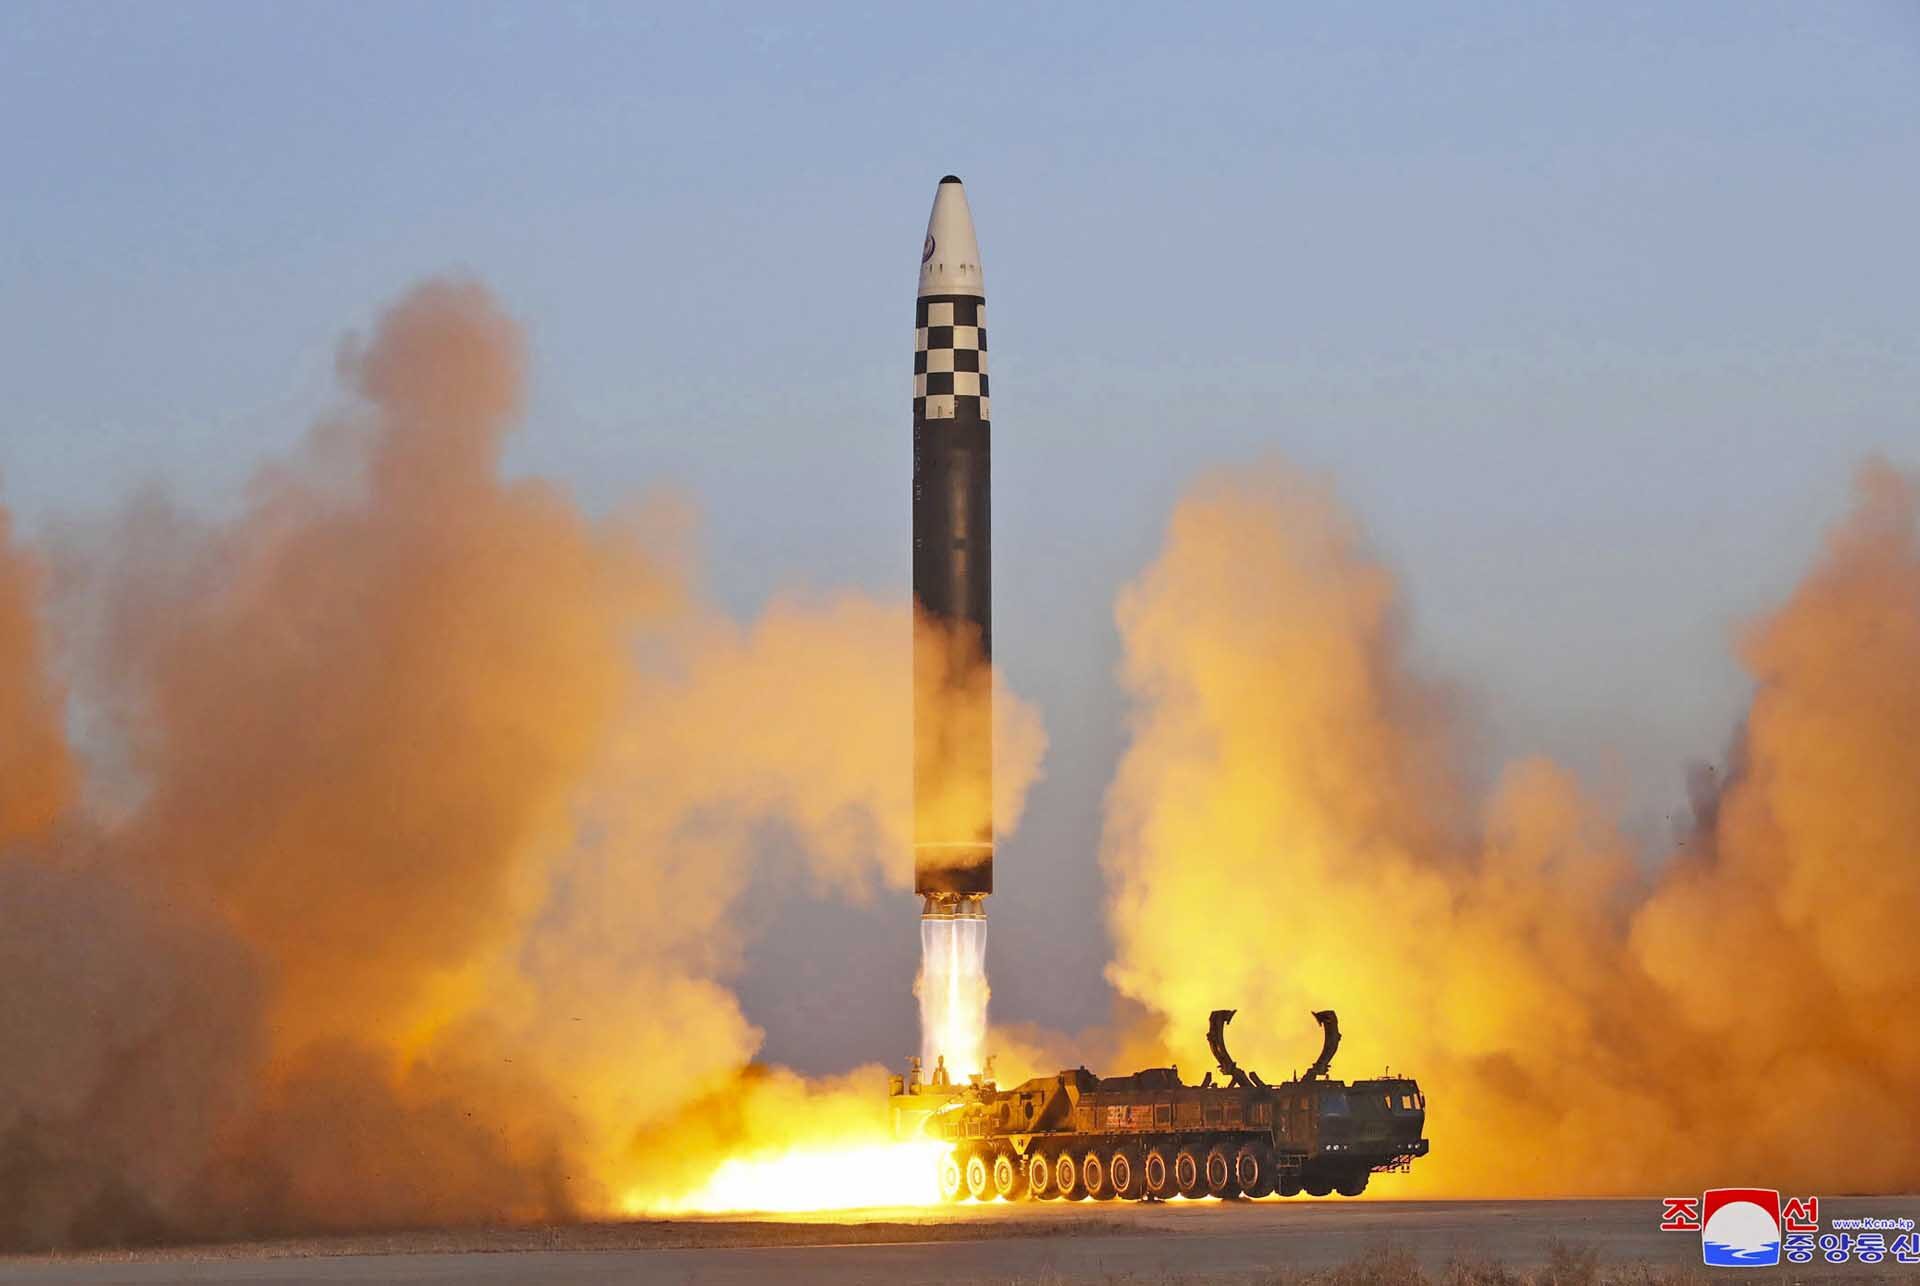 เกาหลีเหนือ “ยิงขีปนาวุธอีก” ยัวะ “เรือดำน้ำพลังงานนุก” ของสหรัฐโผล่เกาหลีใต้